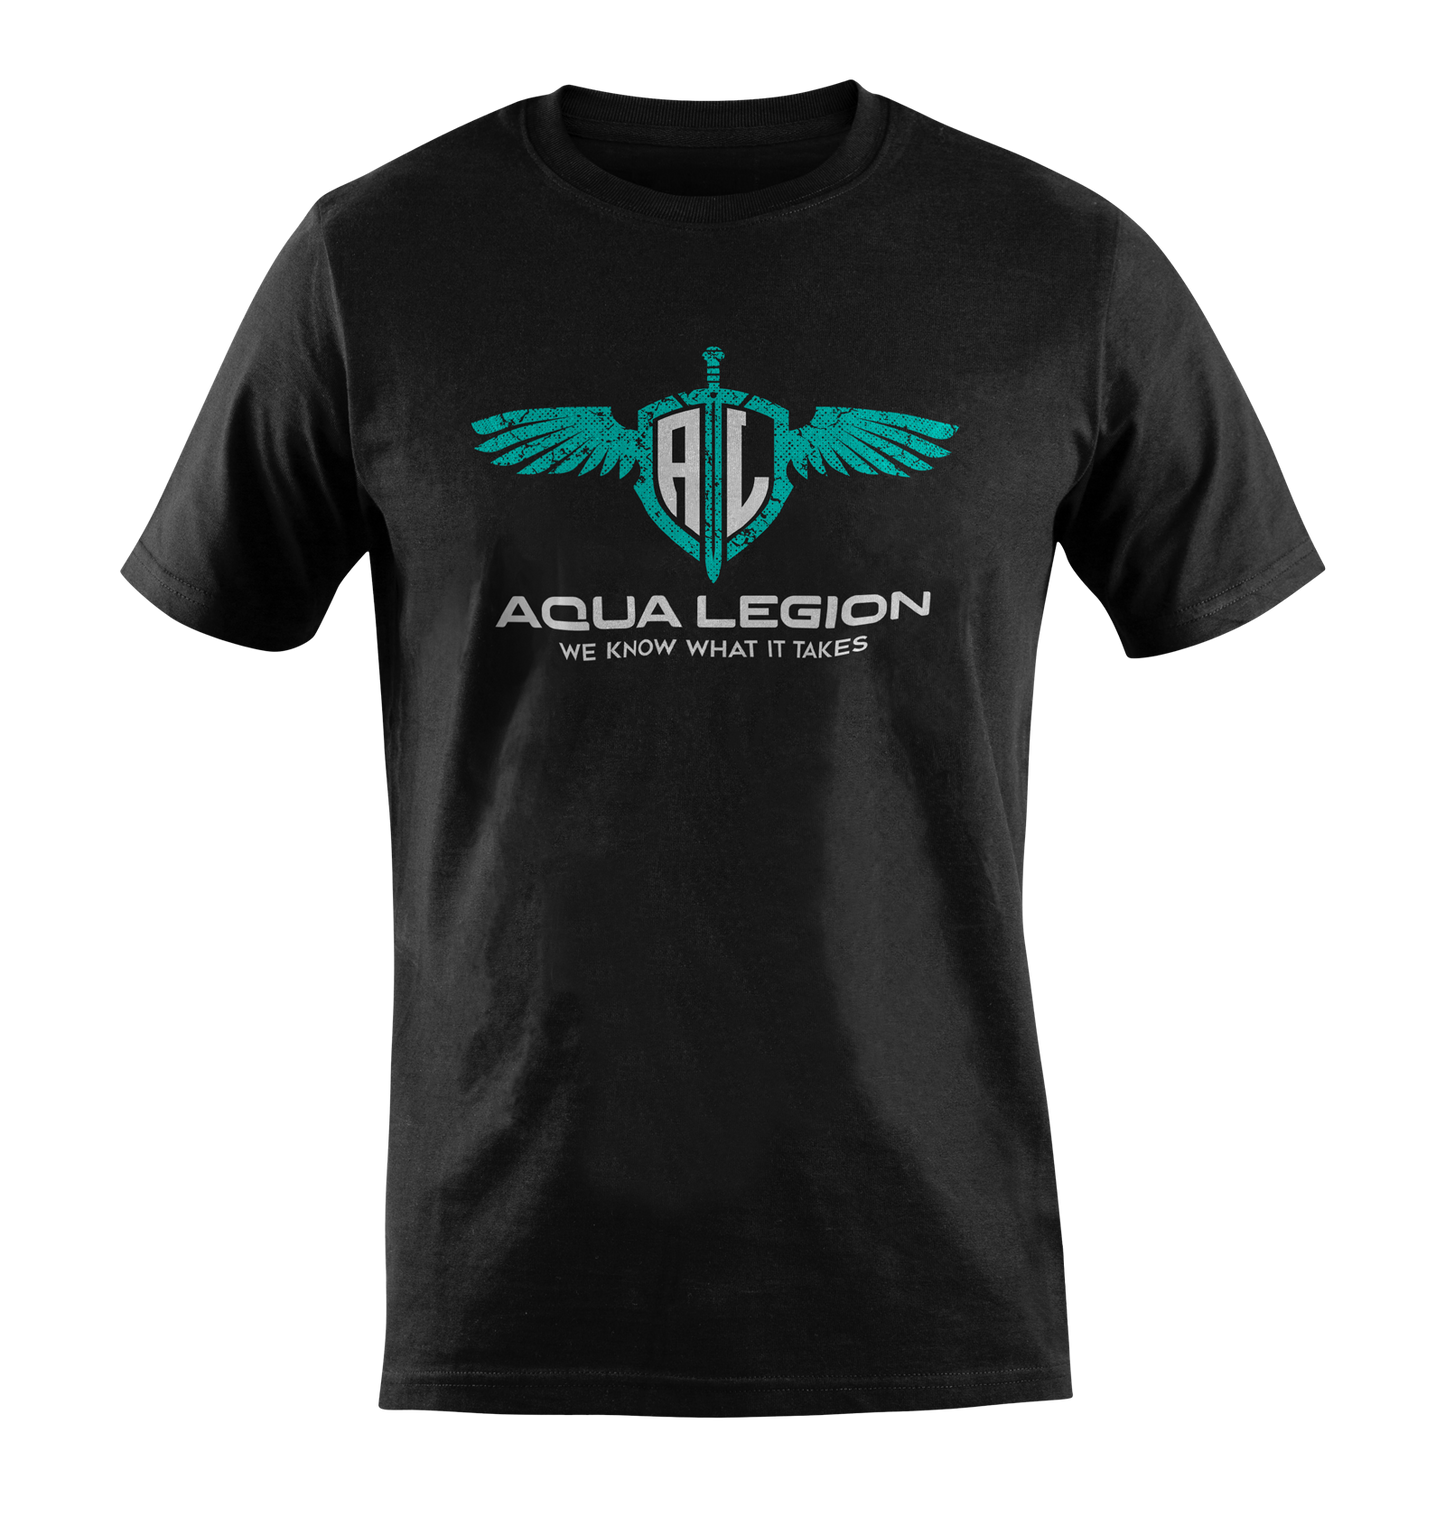 Aqua Legion Originals - Black / Aqua distressed Male t-shirt